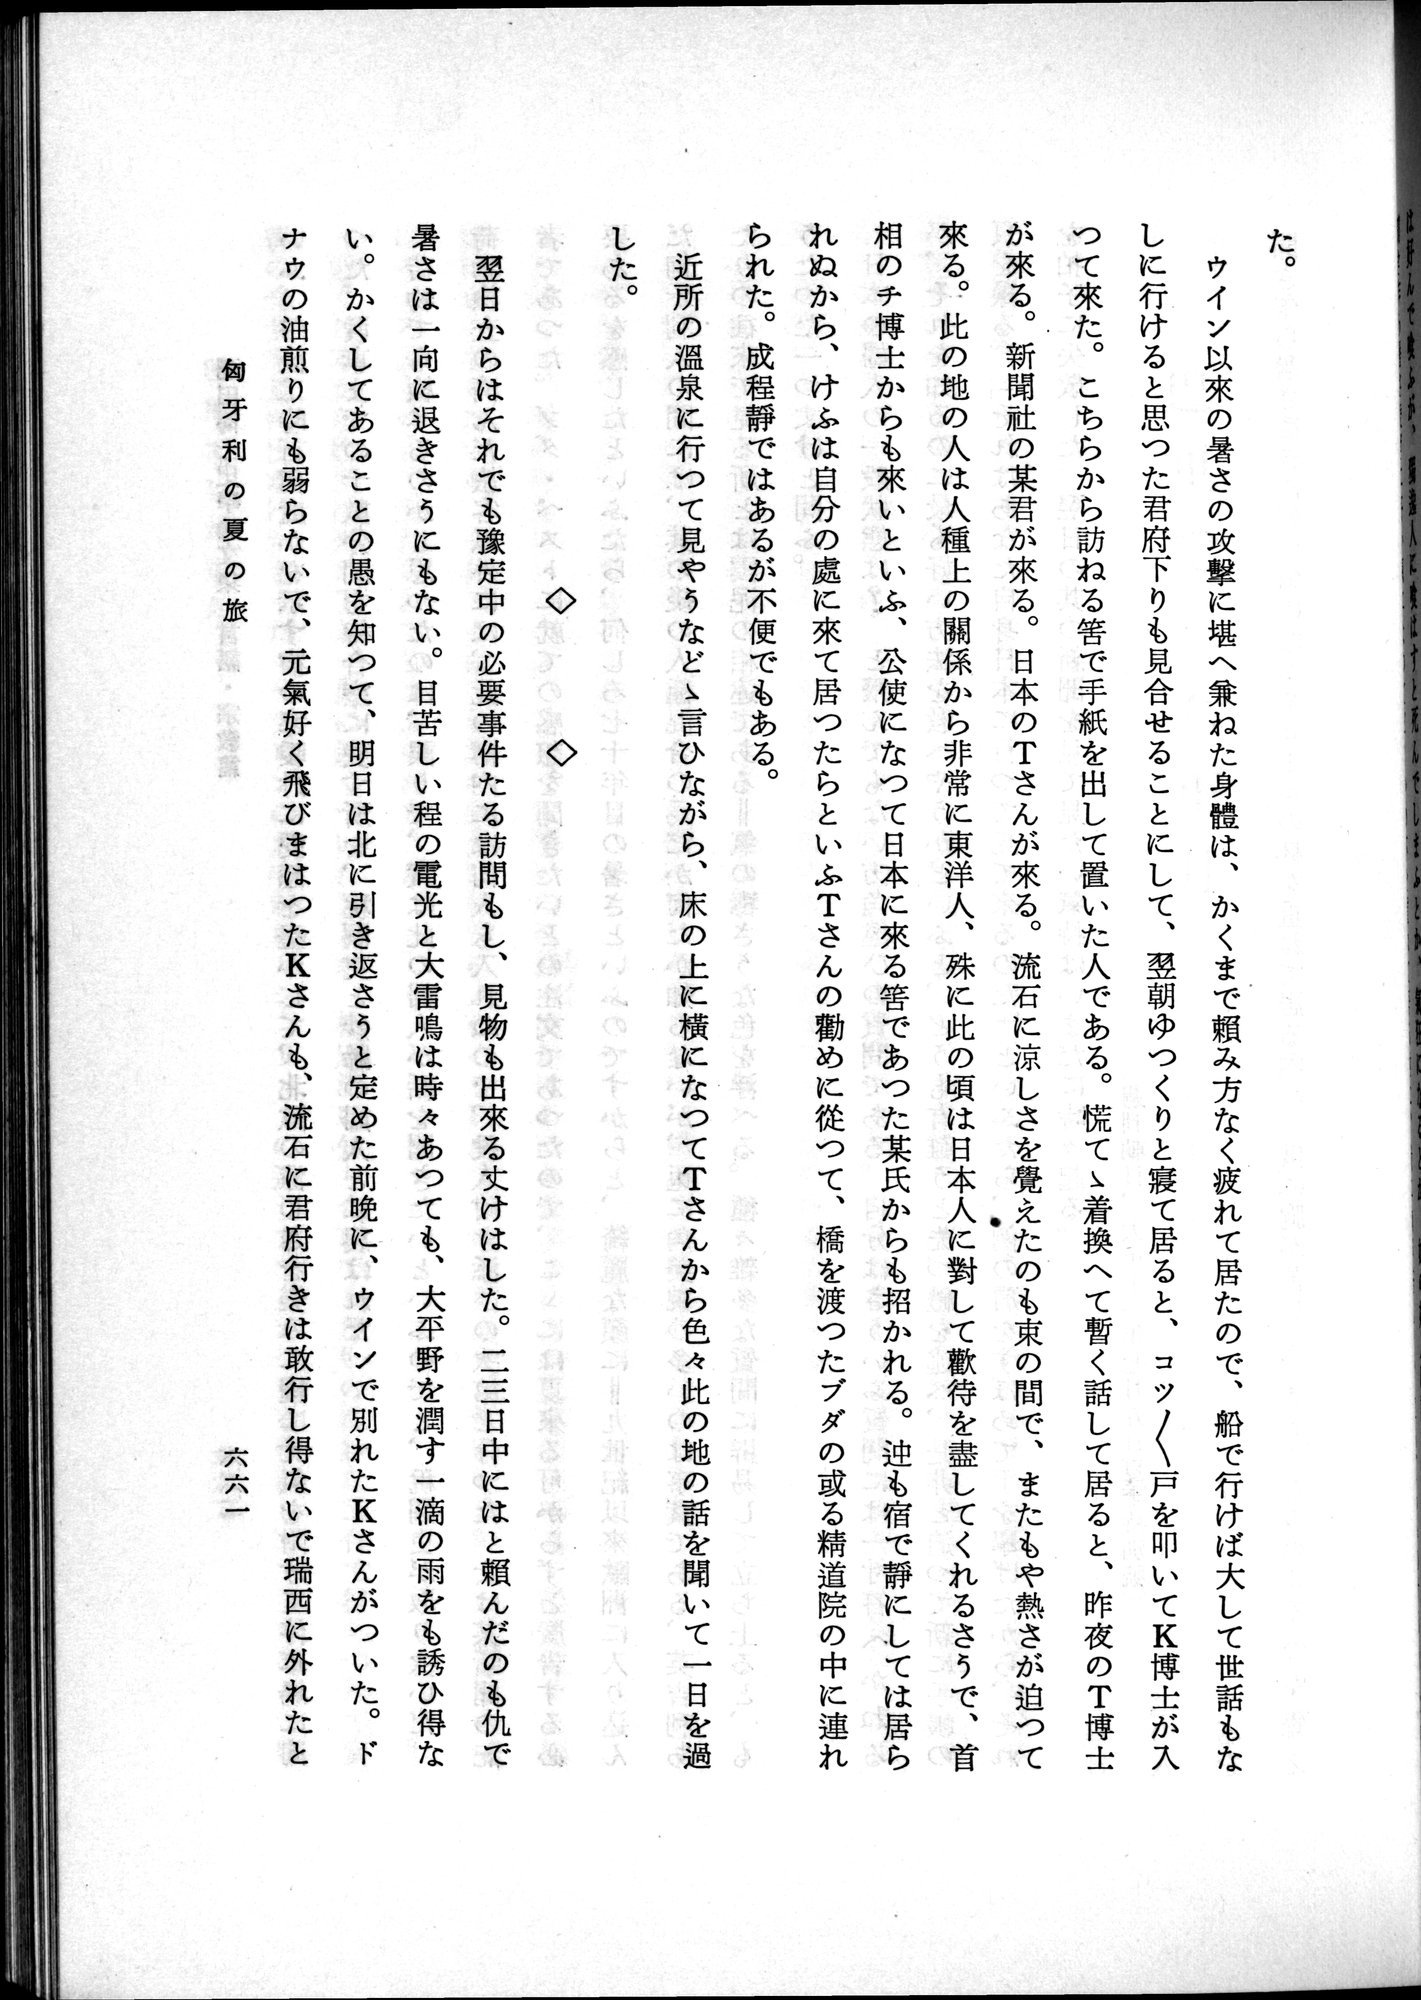 羽田博士史学論文集 : vol.2 / Page 725 (Grayscale High Resolution Image)